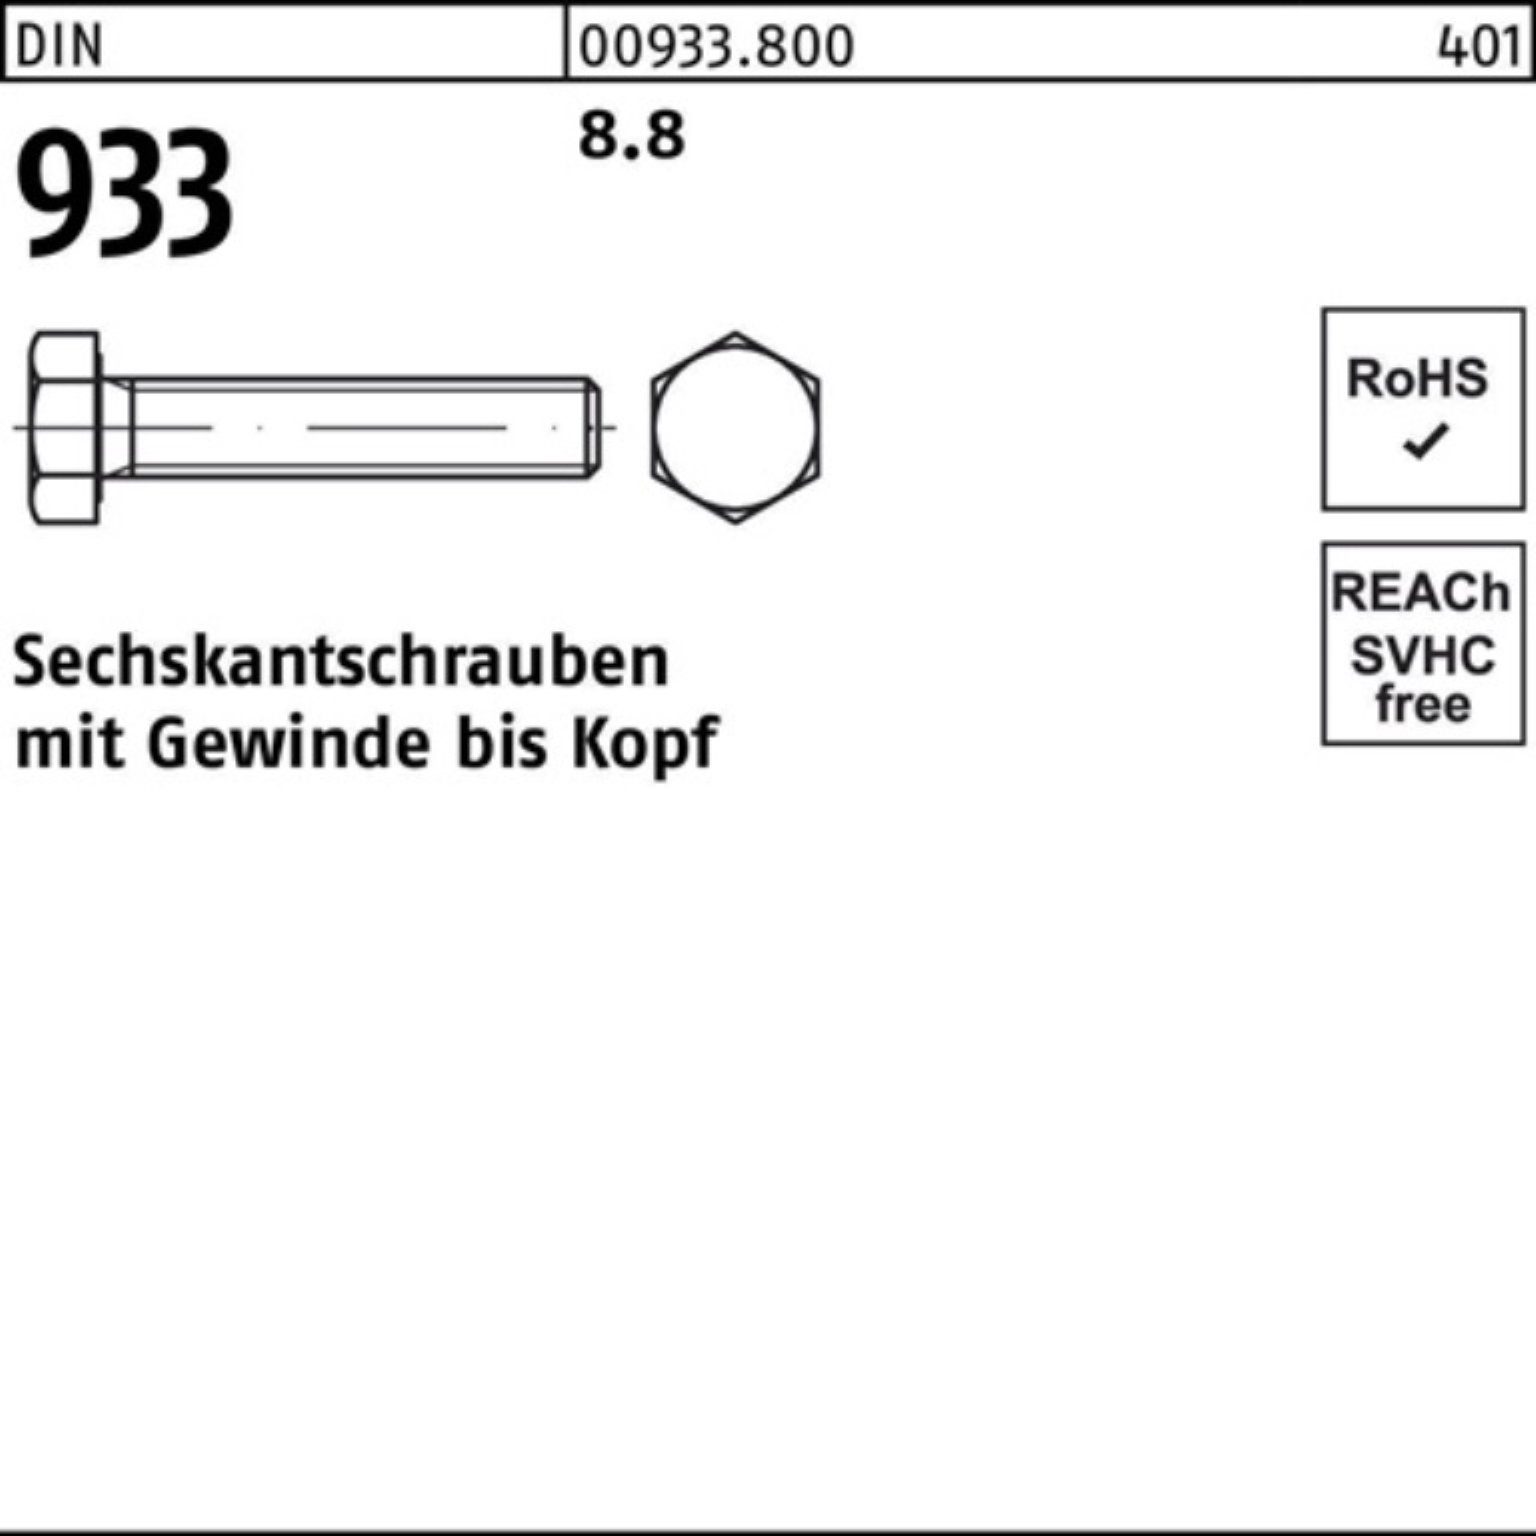 Reyher 150 M45x Stück 1 100er Pack VG Sechskantschraube 933 933 DIN Sechskantschraube 8.8 DIN